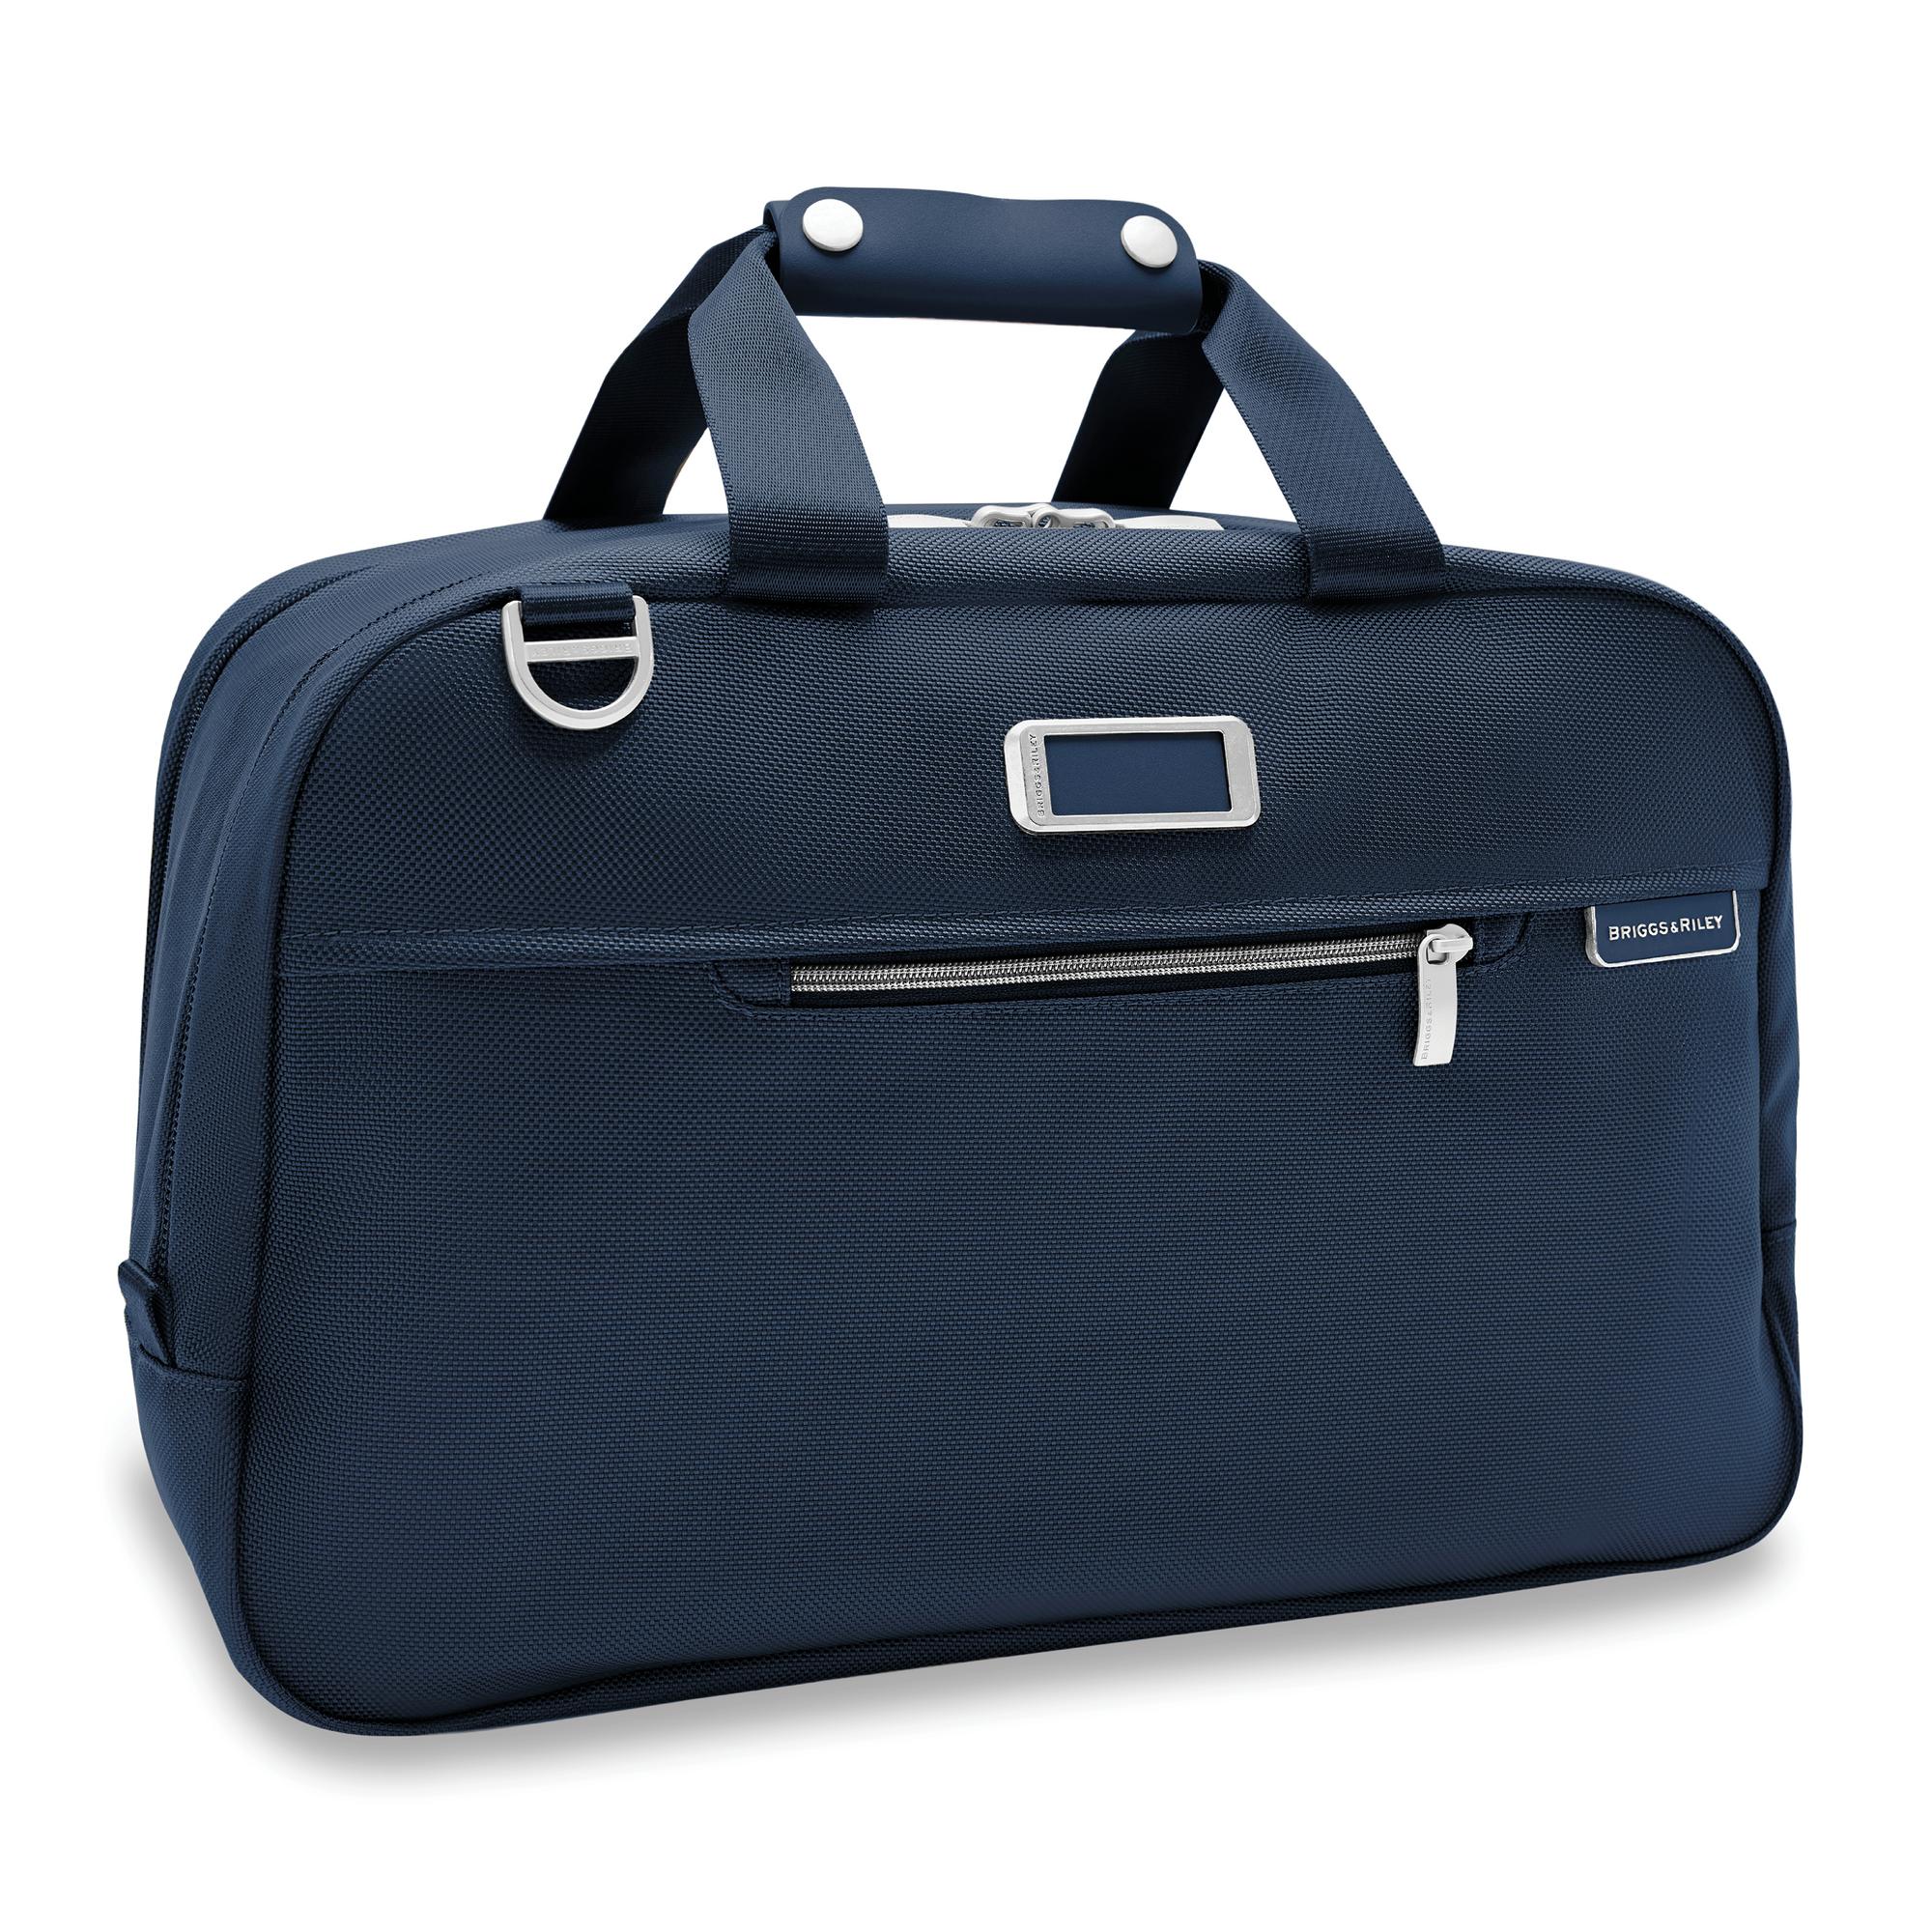 Silver & Riley Convertible Executive Leather Bag